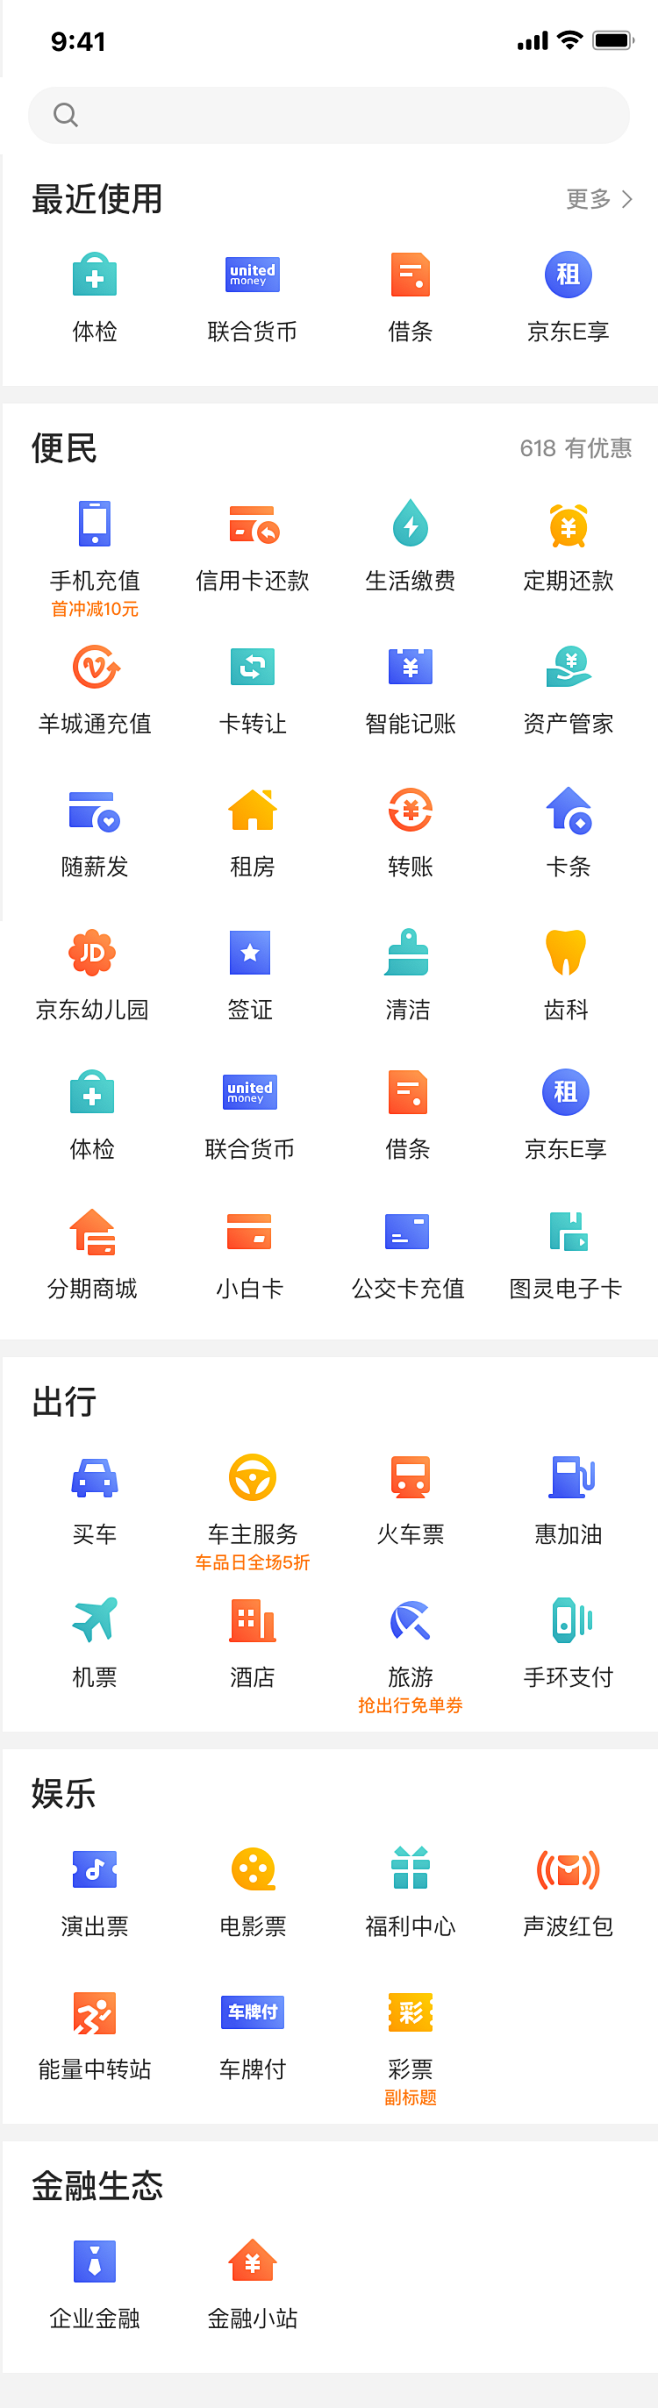 京东金融app 全部服务